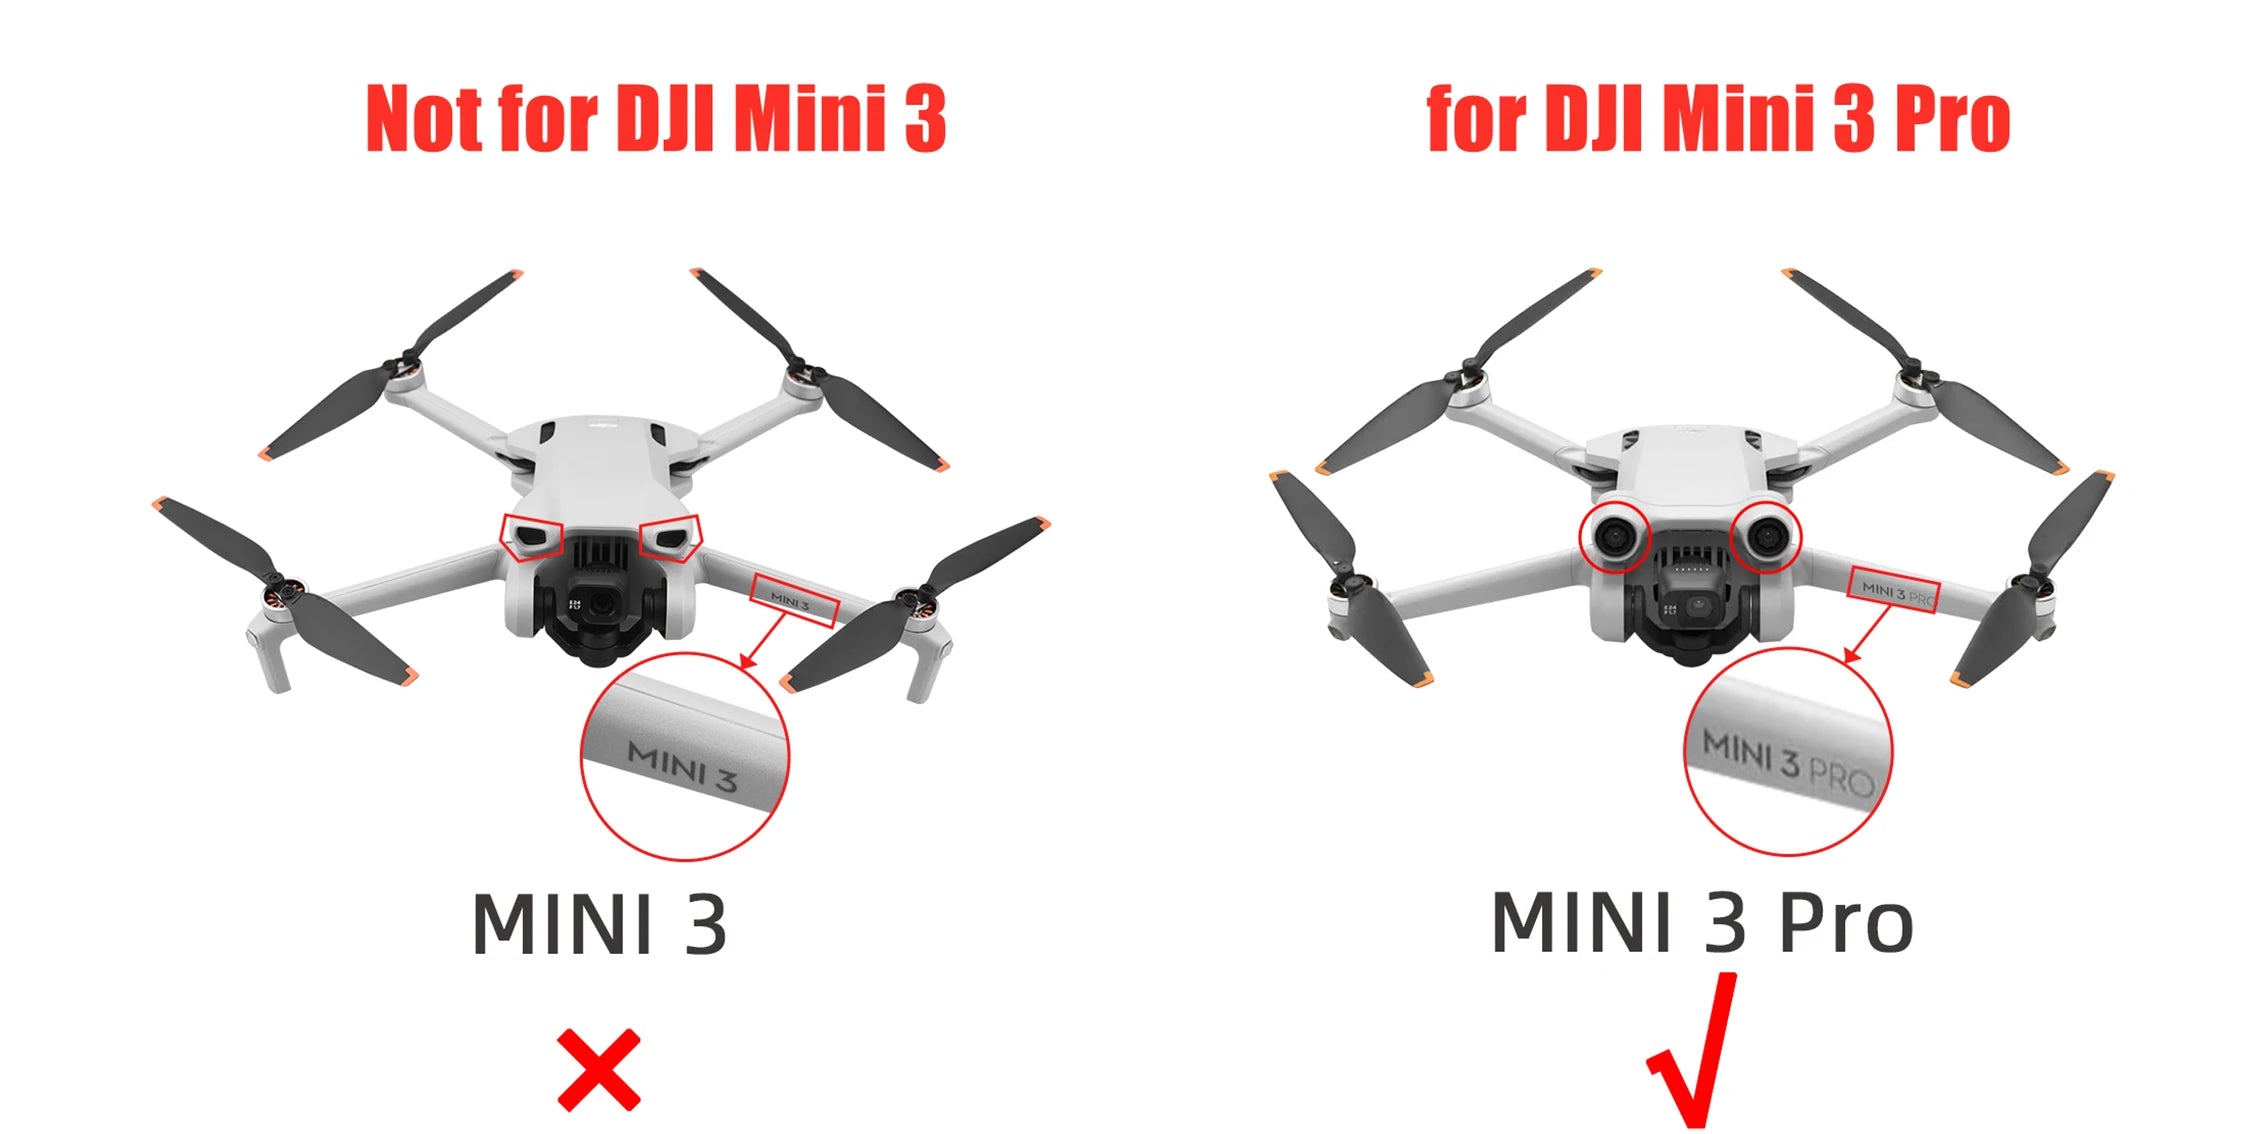 Mini 3 Pro comes with a 6.0*3.0 inch(diameter*